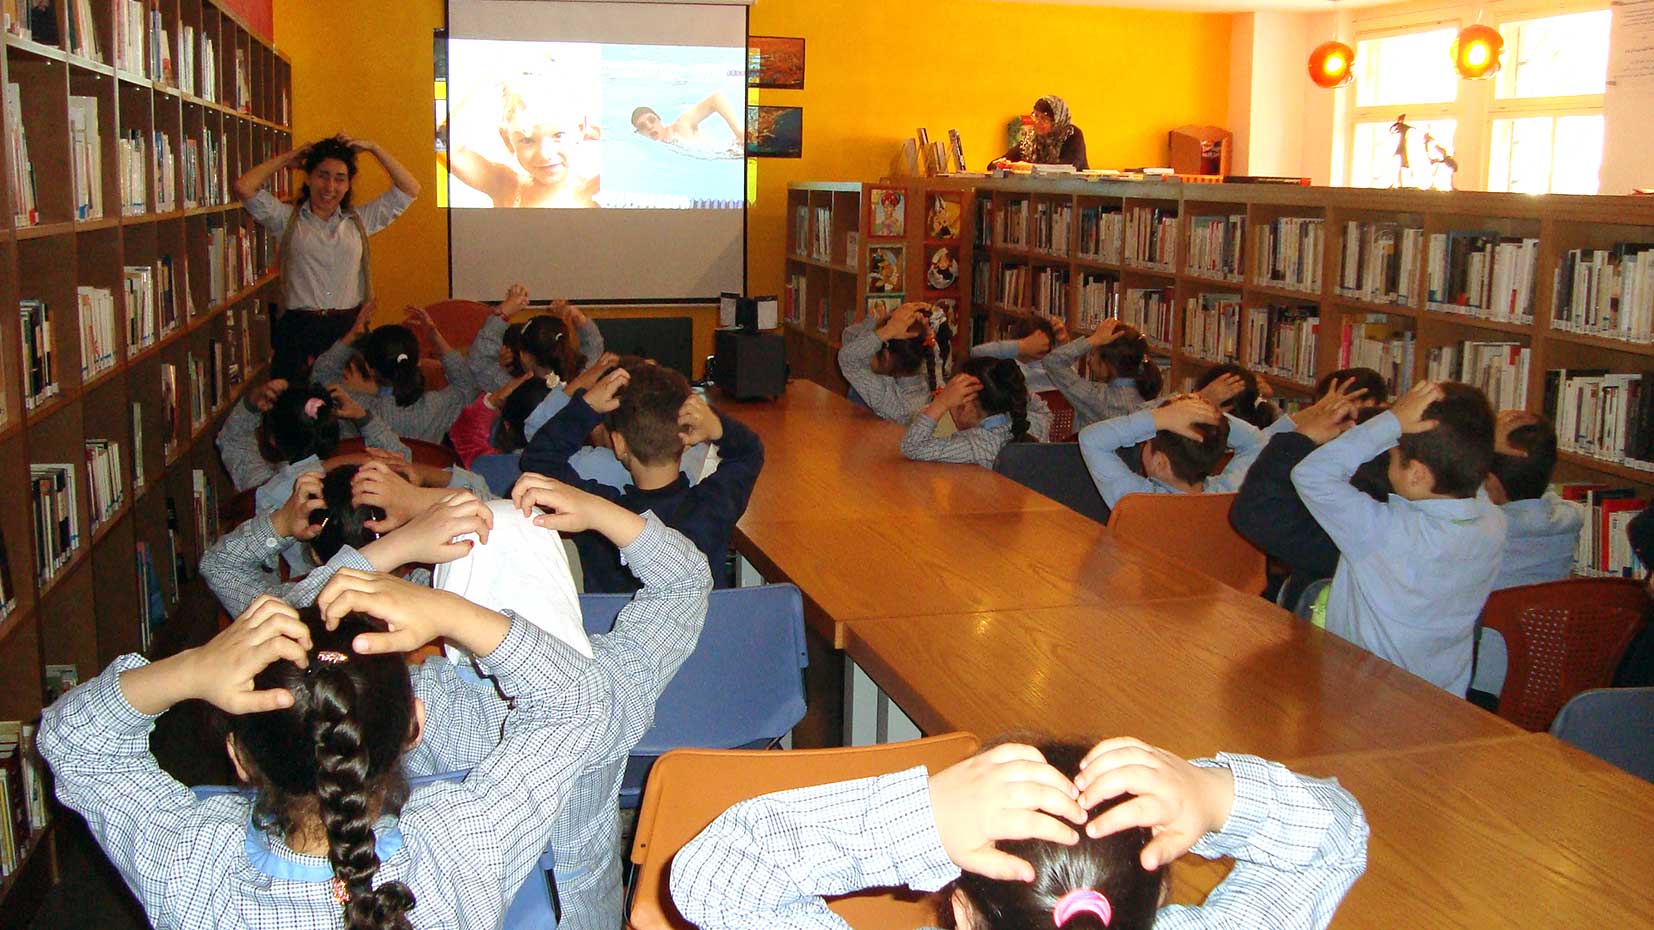 Samir Éditeur - Les élèves écoutent des sons qu’ils doivent associer aux bonnes images. Ici, ils ont reconnu le bruit de la douche.